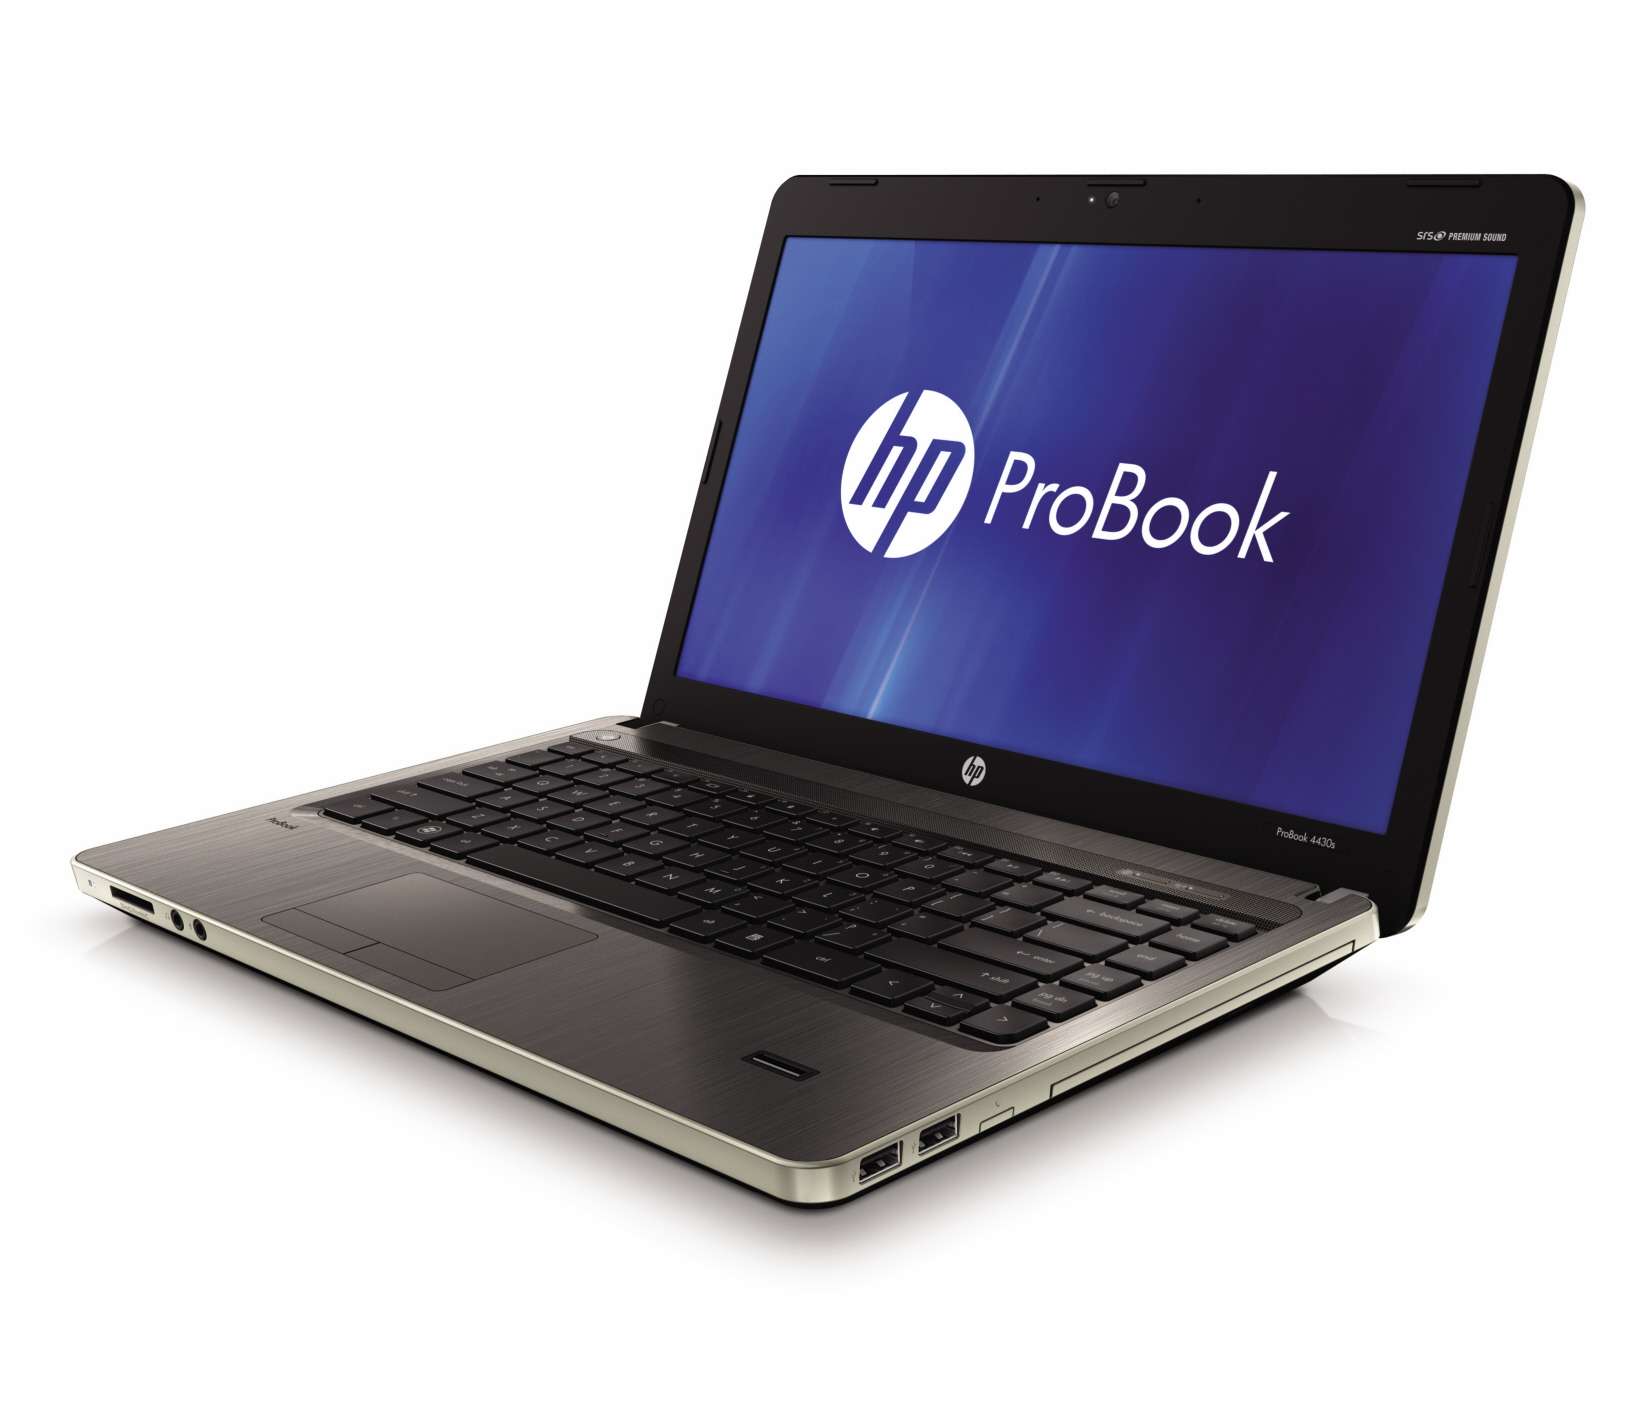  HP ProBook 4530s Core i5-2520M